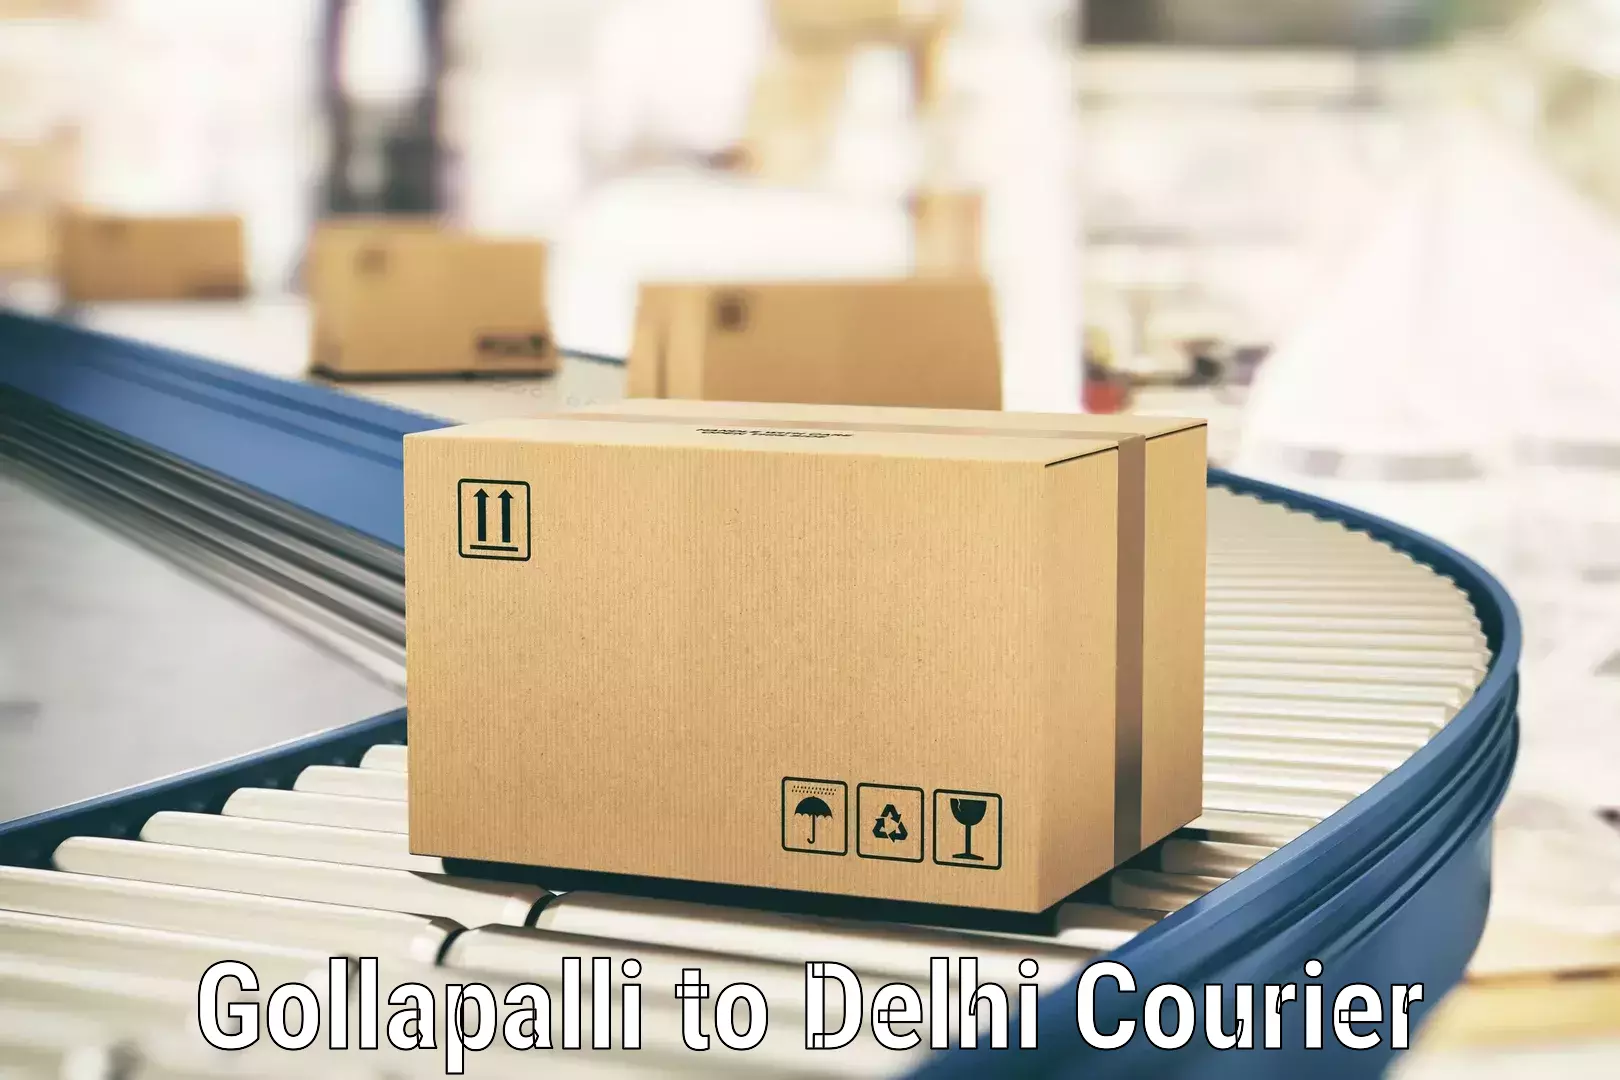 Return courier service Gollapalli to IIT Delhi